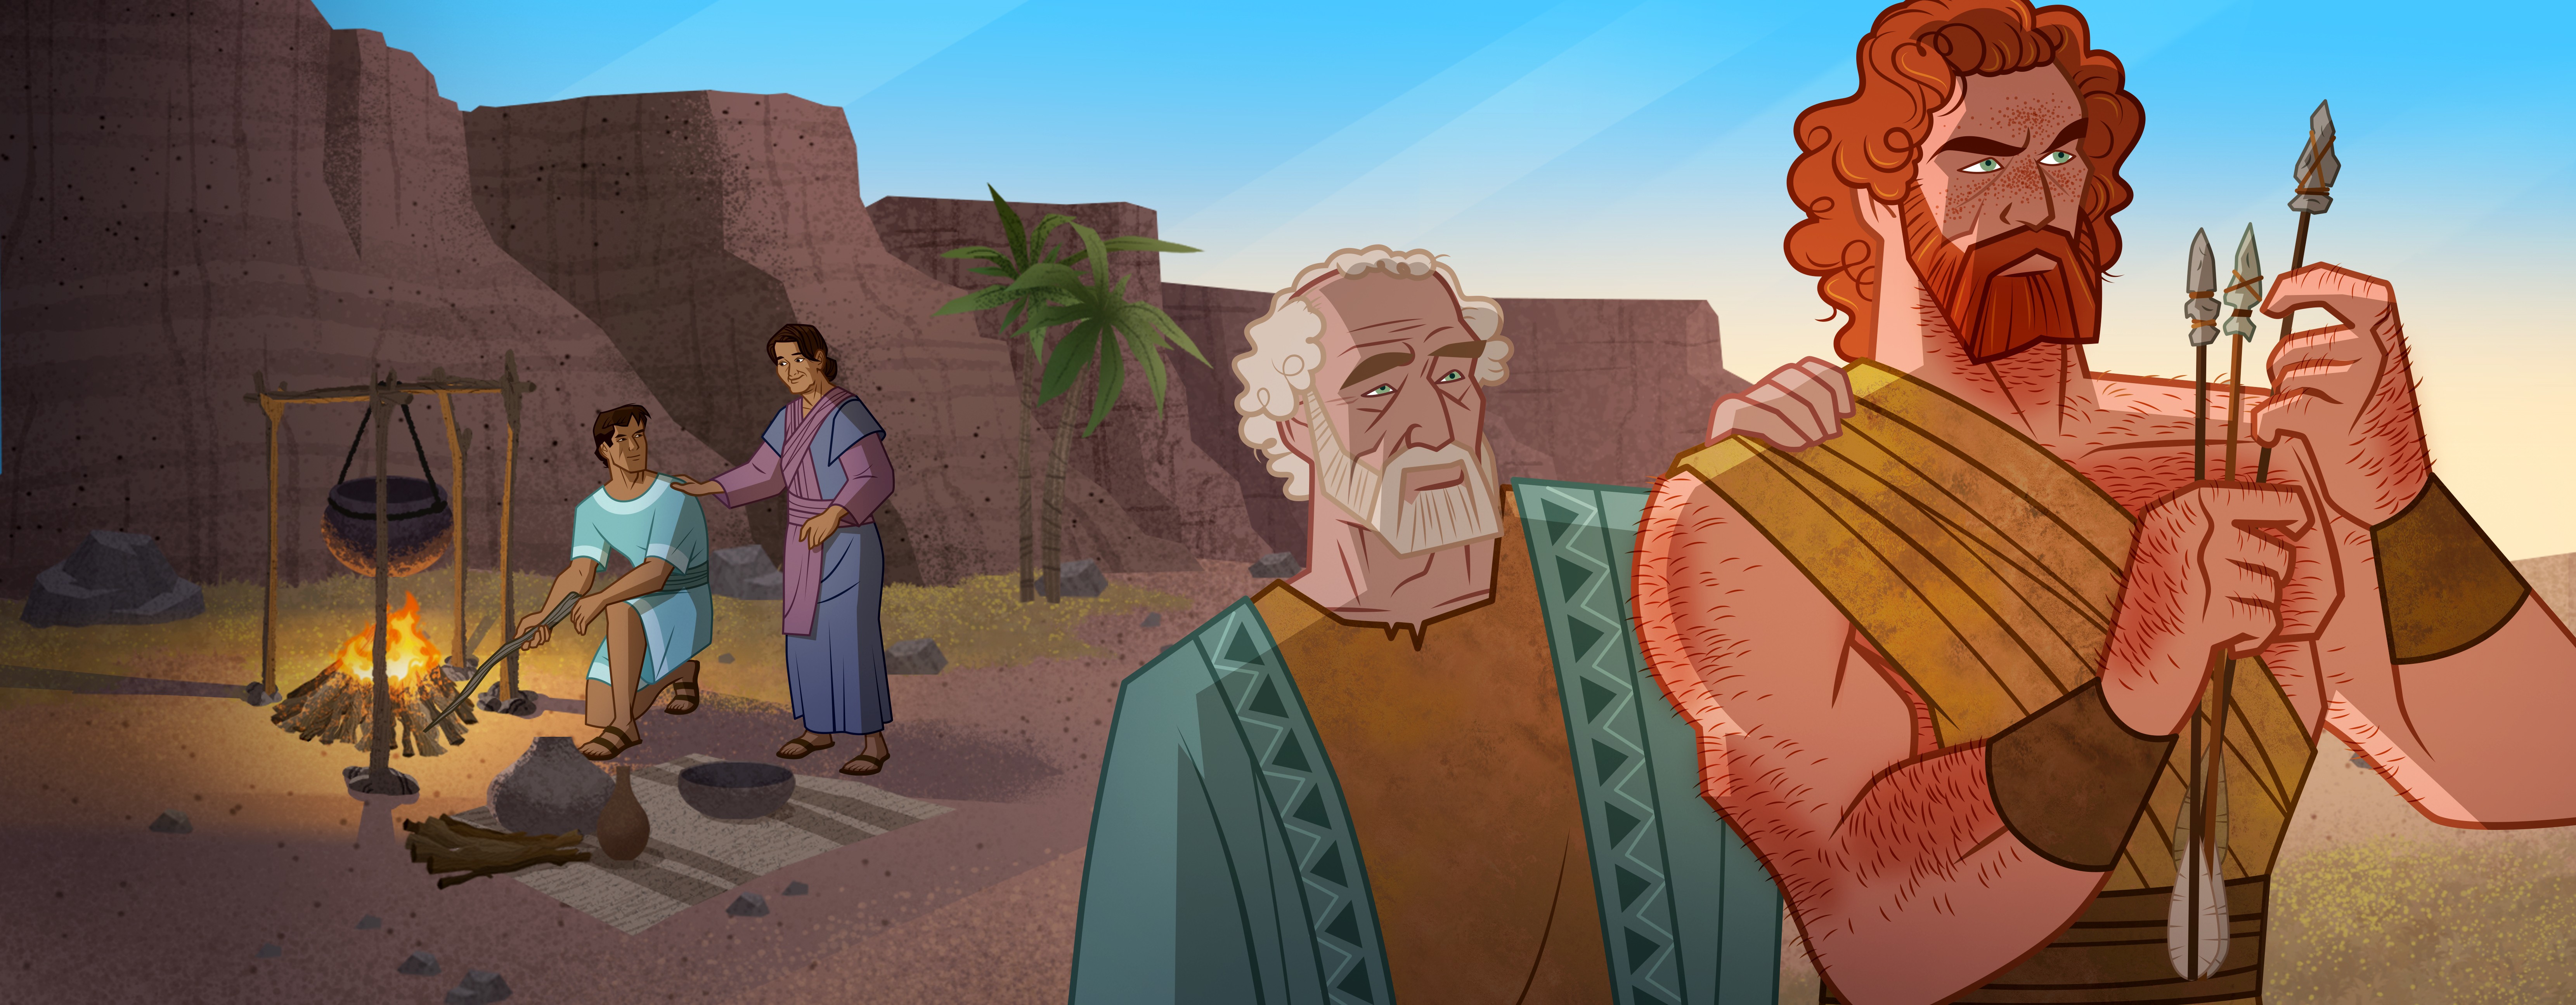 Jacob And Esau Bible Story